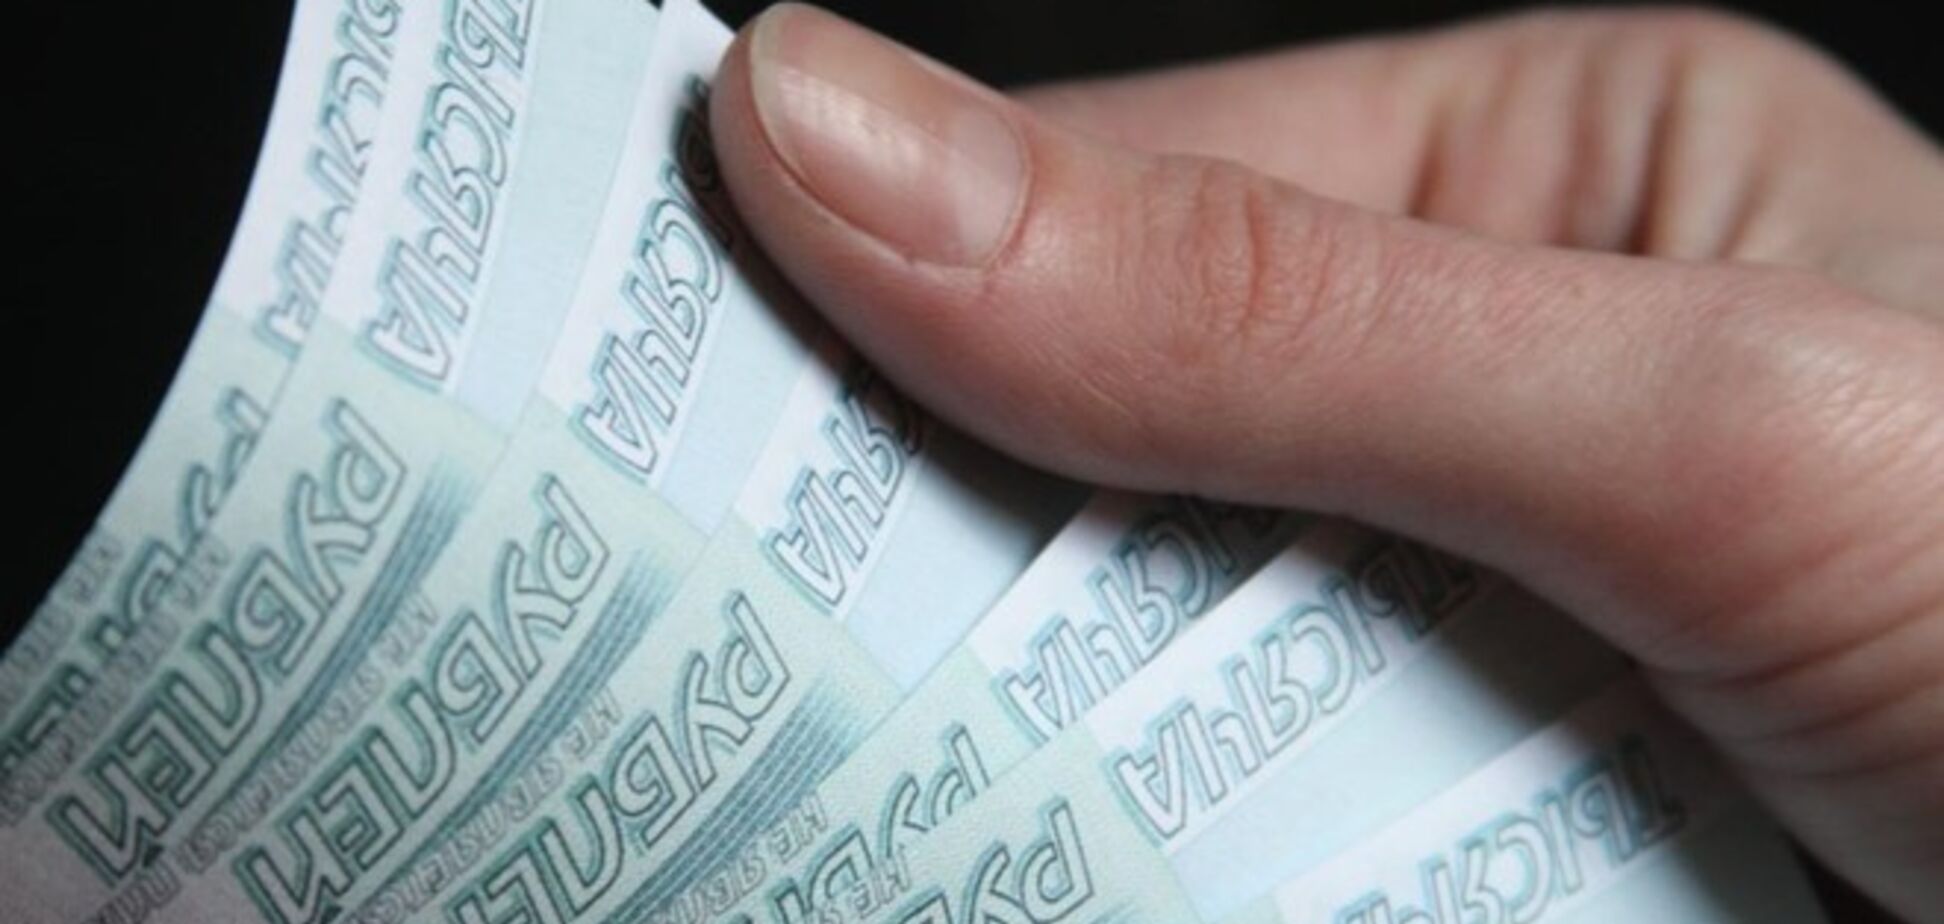 НБУ обязал банки закрыть счета юрлиц Крыма и запретил операции в российских рублях